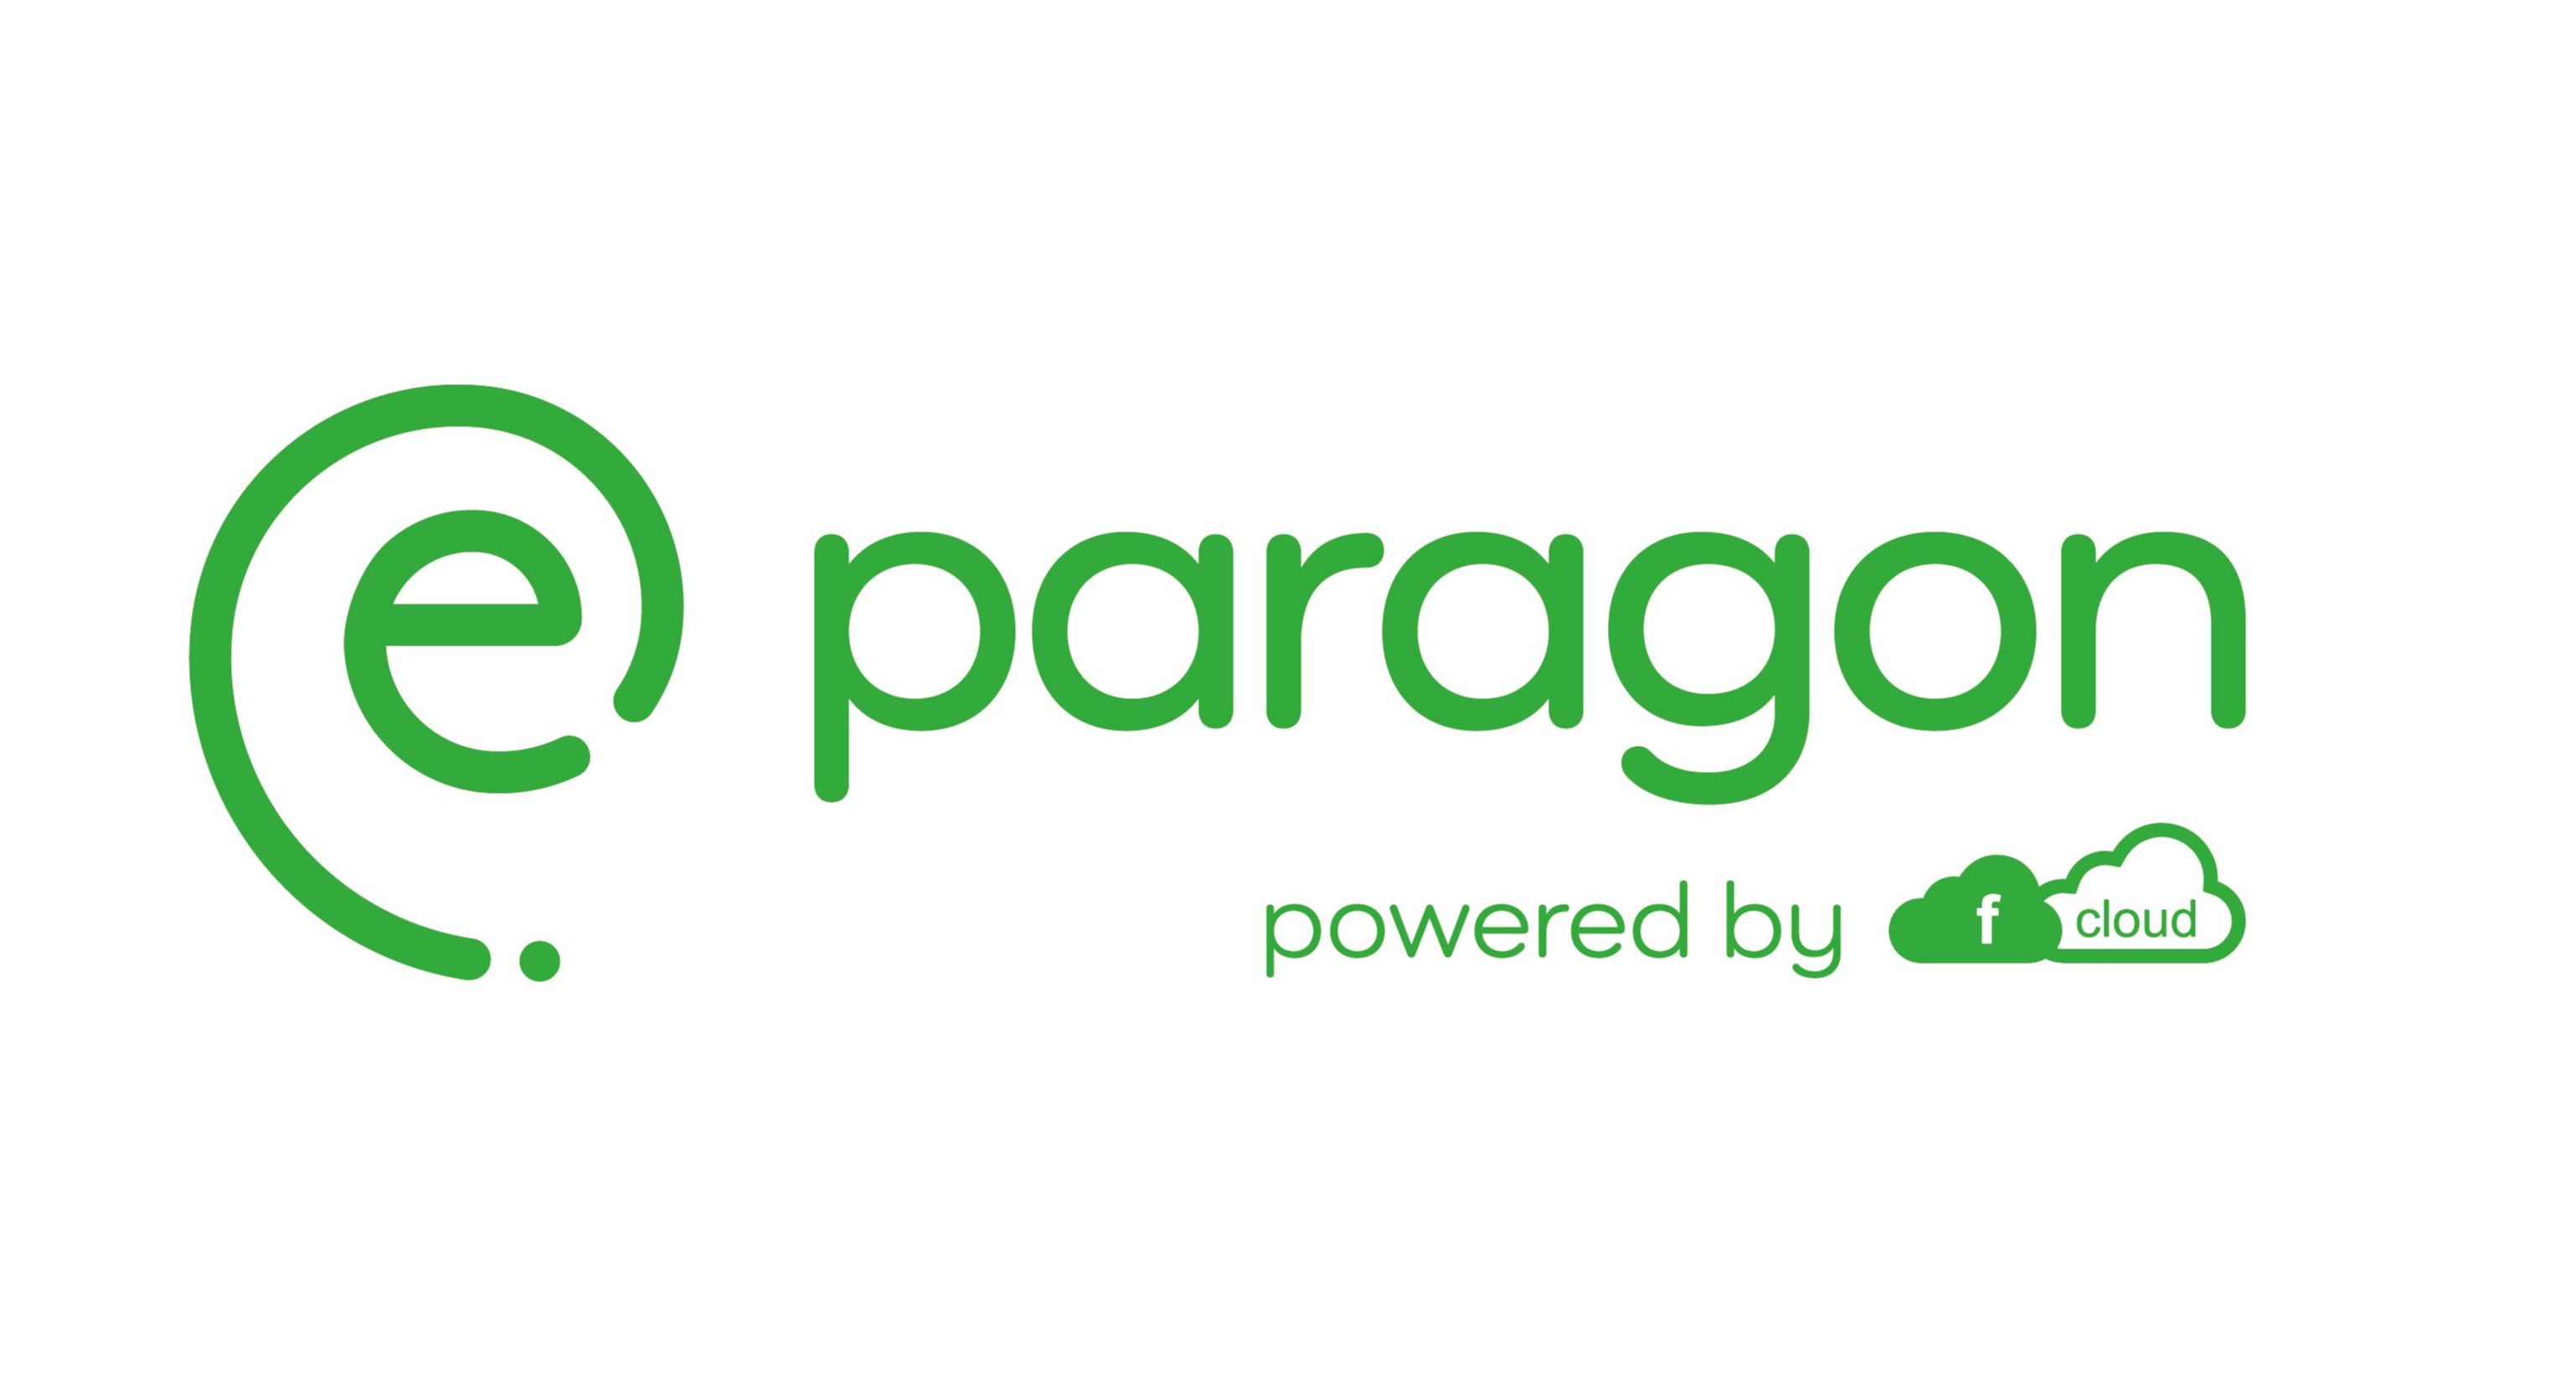 e-paragon logo zielone